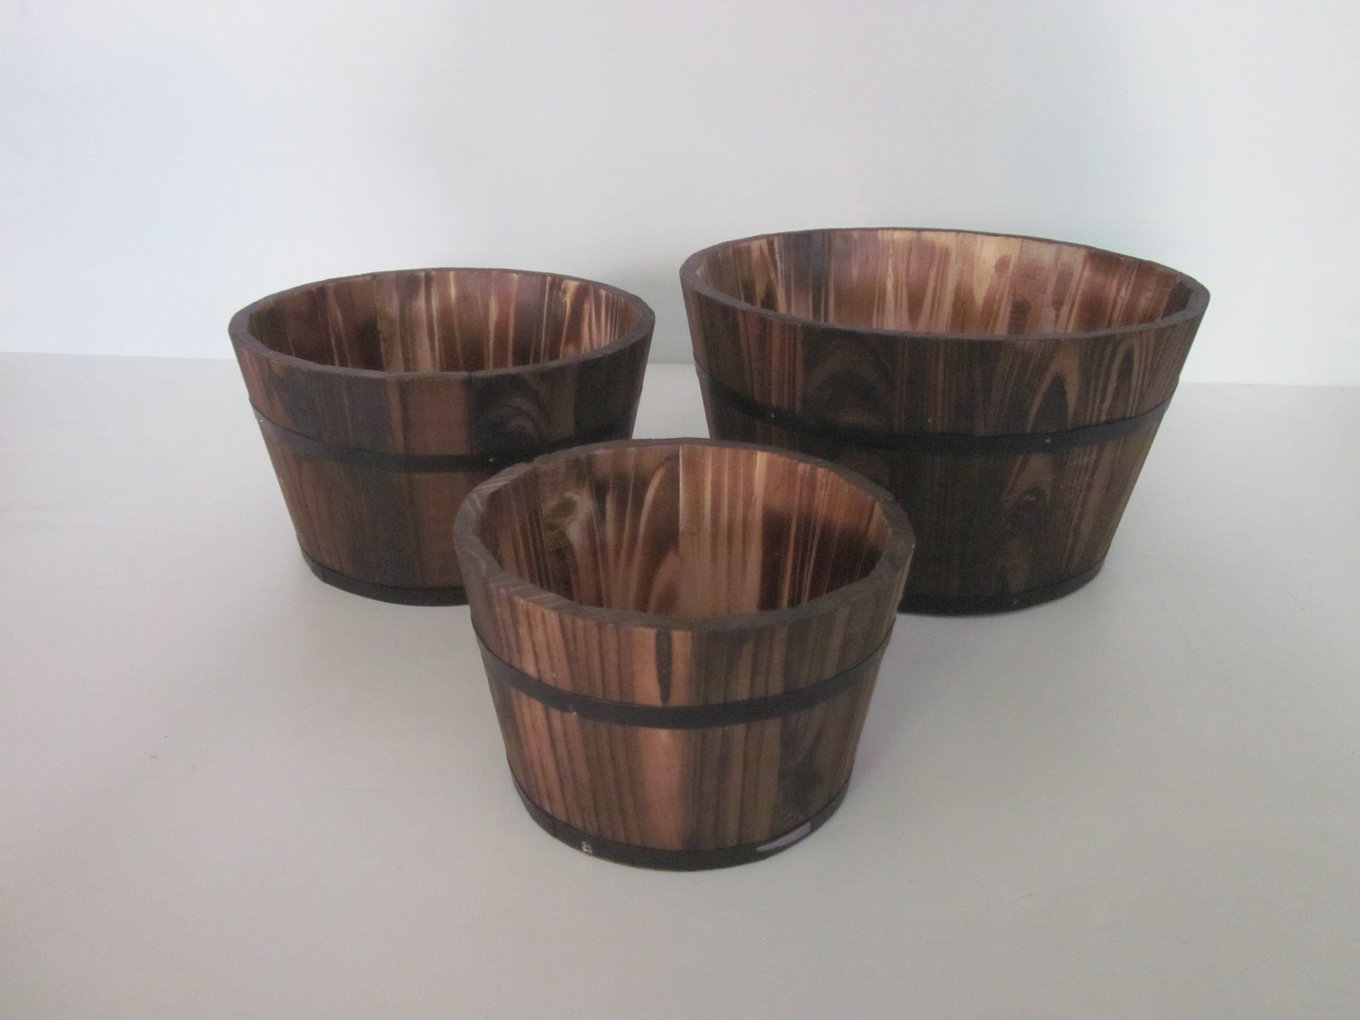 1" x 10" x 1" Brown, Wood Garden Planter - 3 Piece